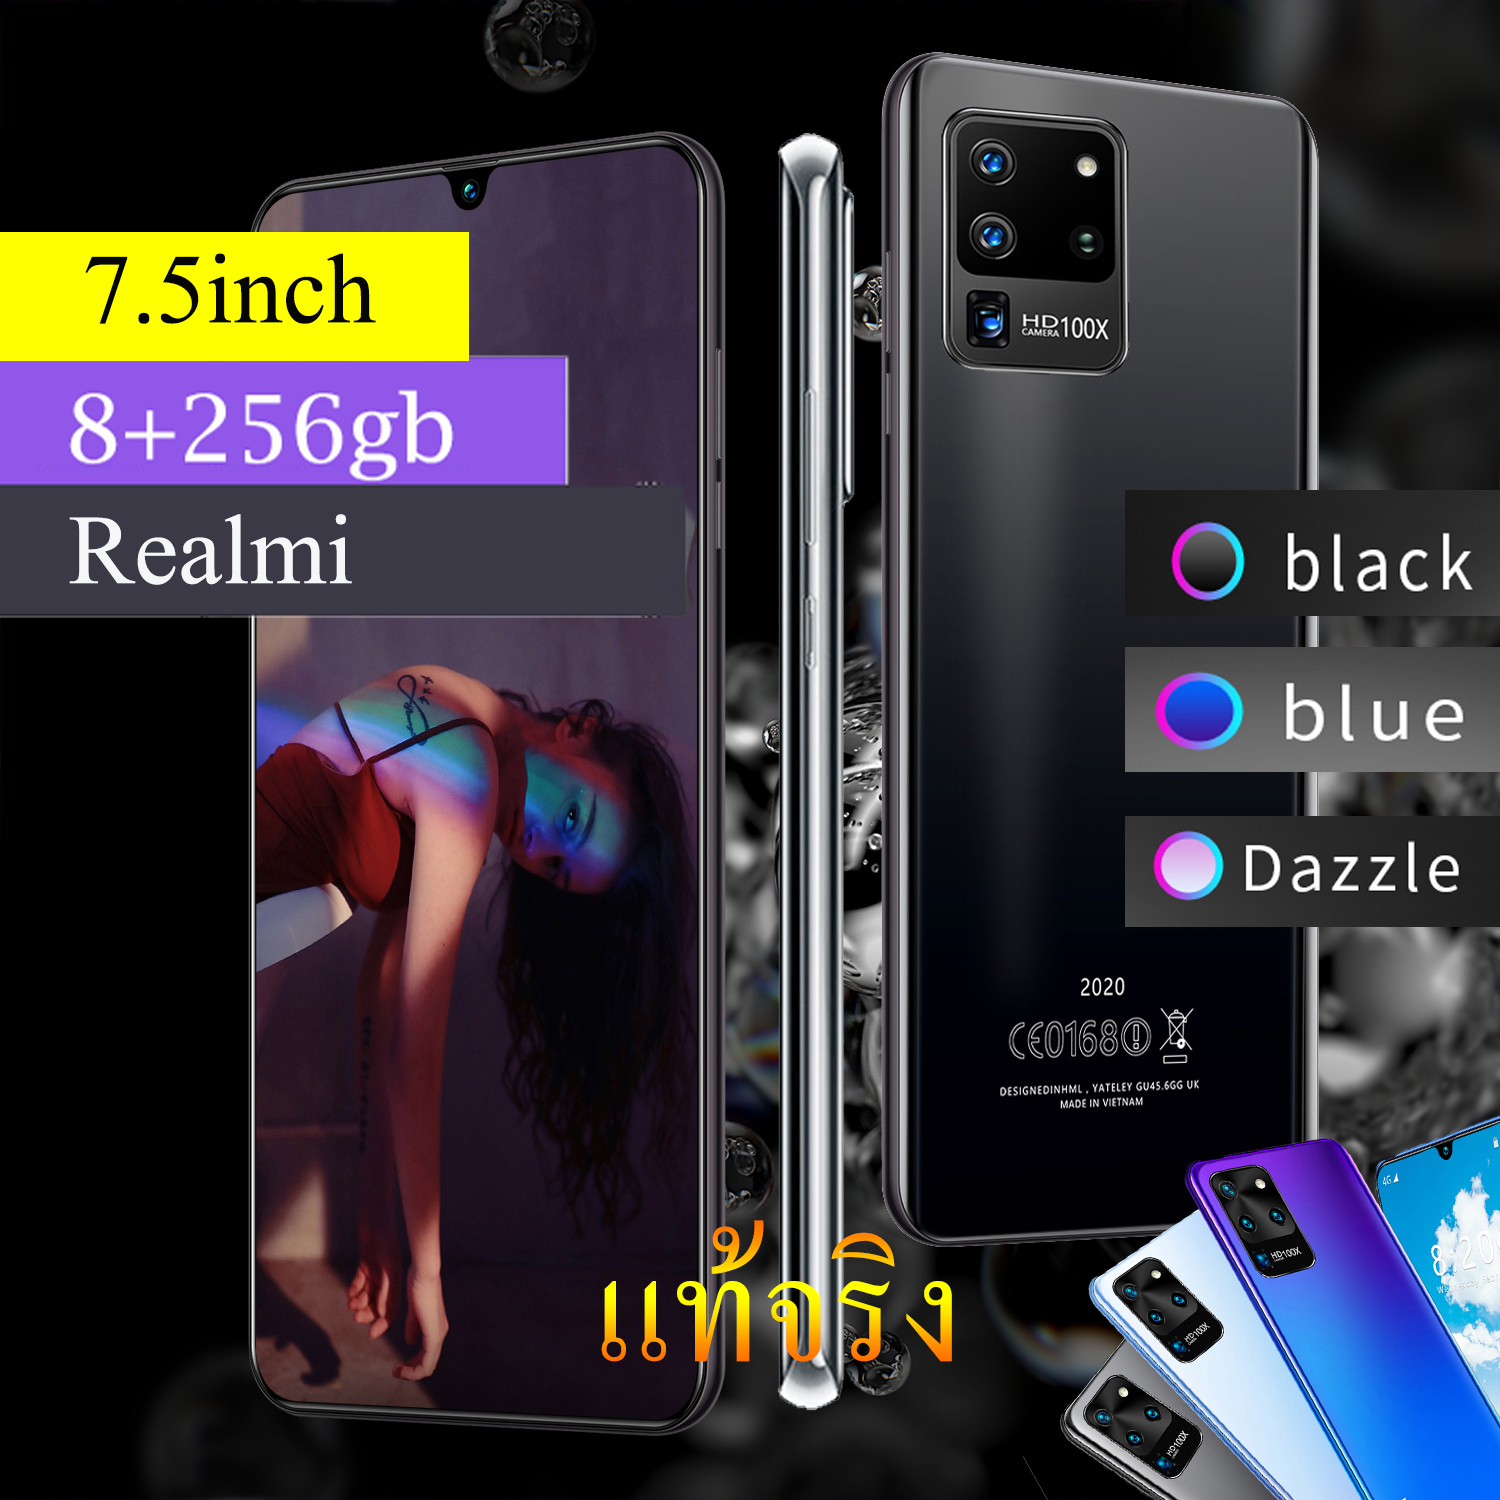 ศูนย์ไทย Realmi โทรศัพท์มือถือ5g มือถือ จอใหญ่ 7.5นิ้ว มือถือราคาถูก 5g smartphone มีการรับประกันจากผู้ขาย โทรศัพท์มือถือถูกๆ มือถือรุ่นใหม่ล่าสุด2021 โทรศัพท์ราคาถูก RAM8GB +ROM256GB โทรศัพท์มือถือ Android9.1 phone รองรับเกม สมาร์ทโฟน